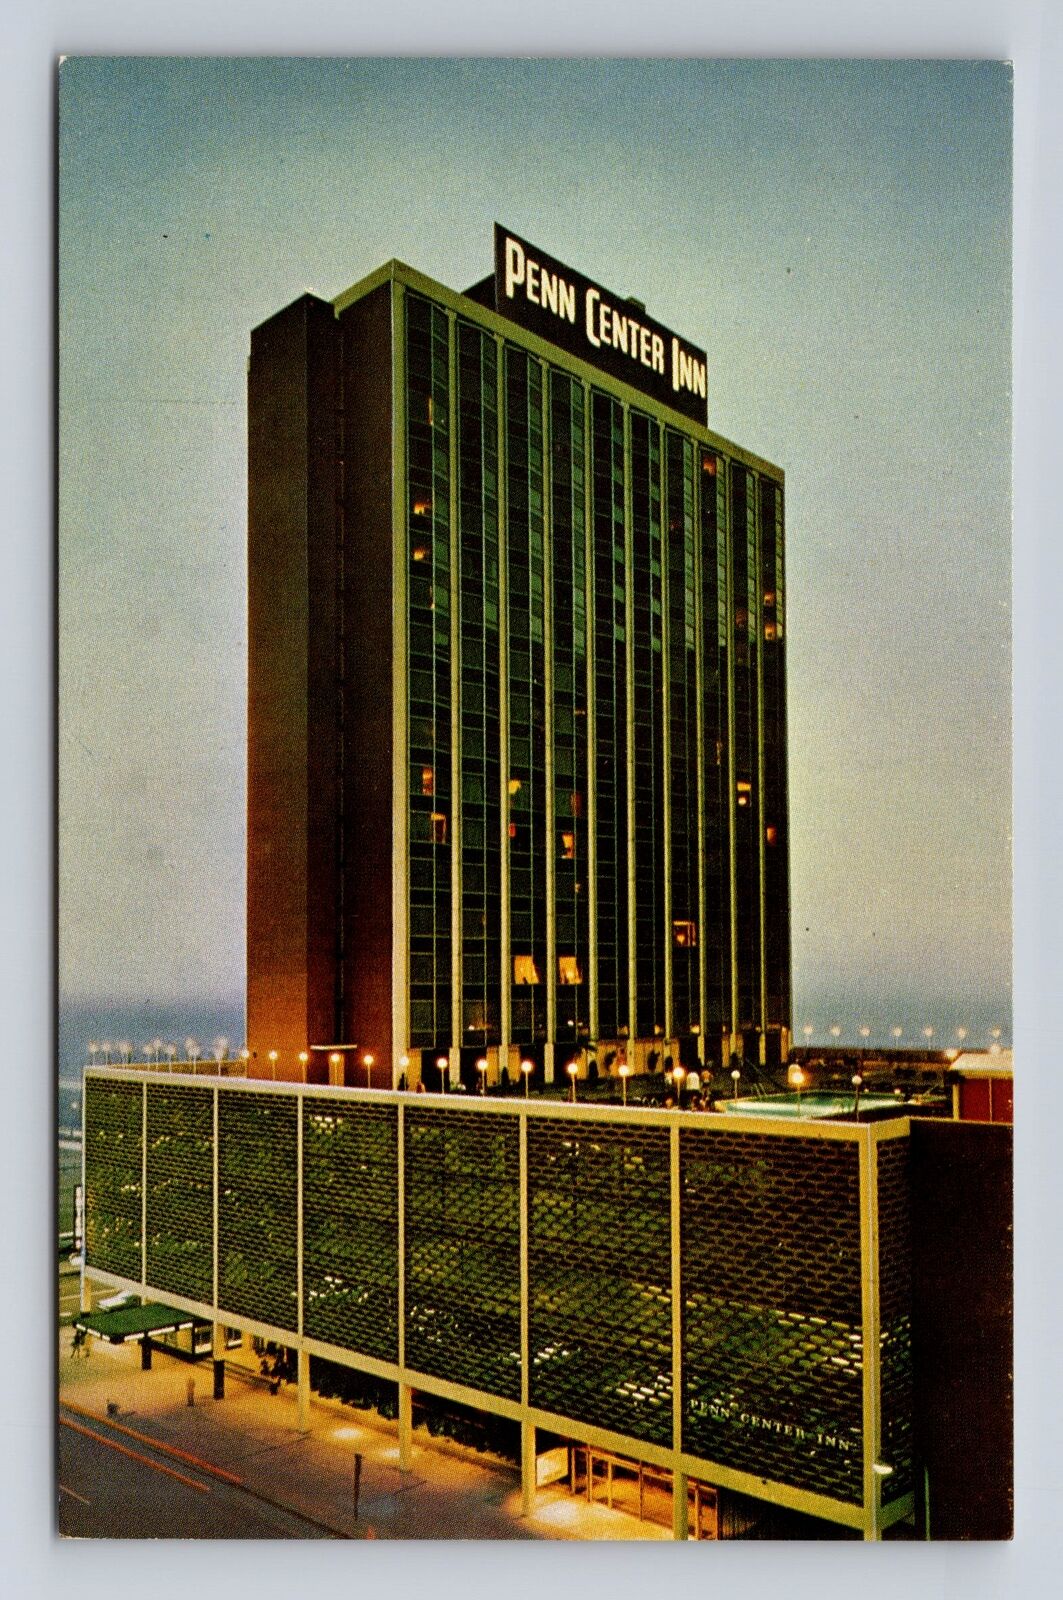 Philadelphia PA-Pennsylvania, Penn Center Inn, Advertising, Vintage Postcard